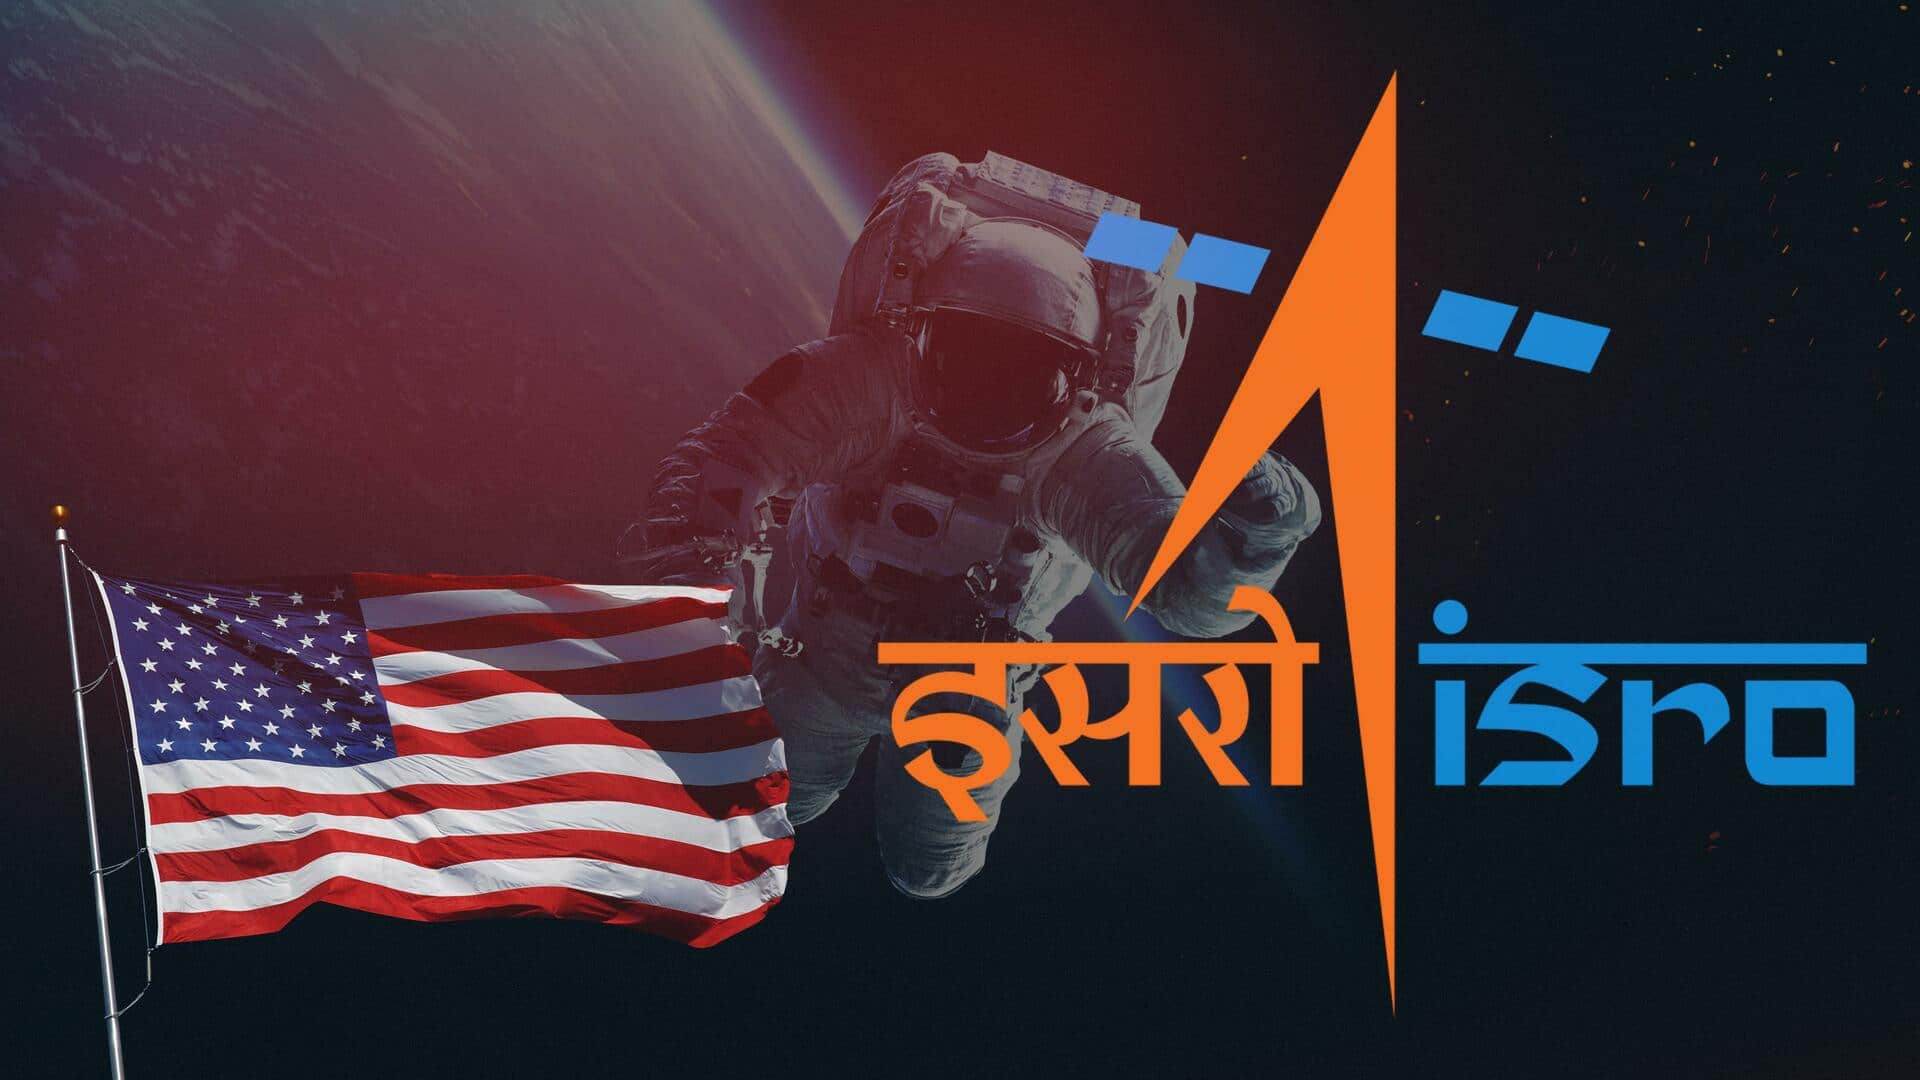 अमेरिका ने एक भारतीय अंतरिक्ष यात्री को प्रशिक्षण का प्रस्ताव दिया, नहीं होना चाहिए गगनयान यात्री